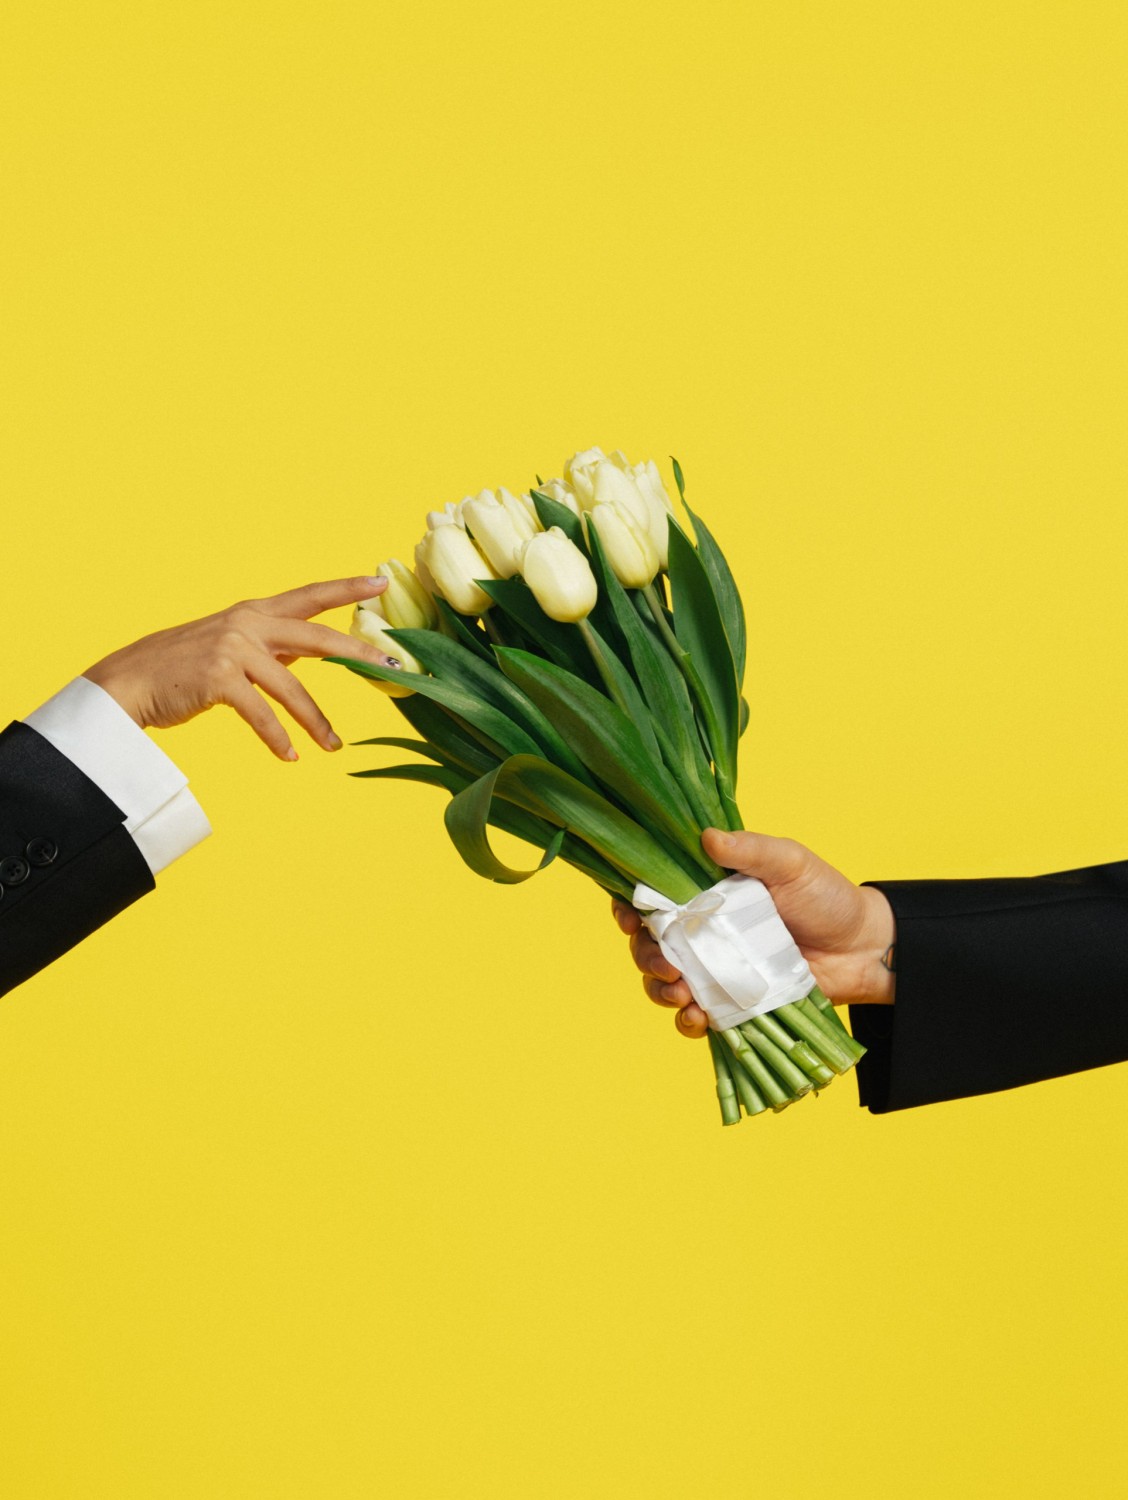 «Когда люди выясняют отношения – это тоже любовь»: Кана Бейсекеев и Айдина Буковски честно о браке, ссорах, быте и романтике